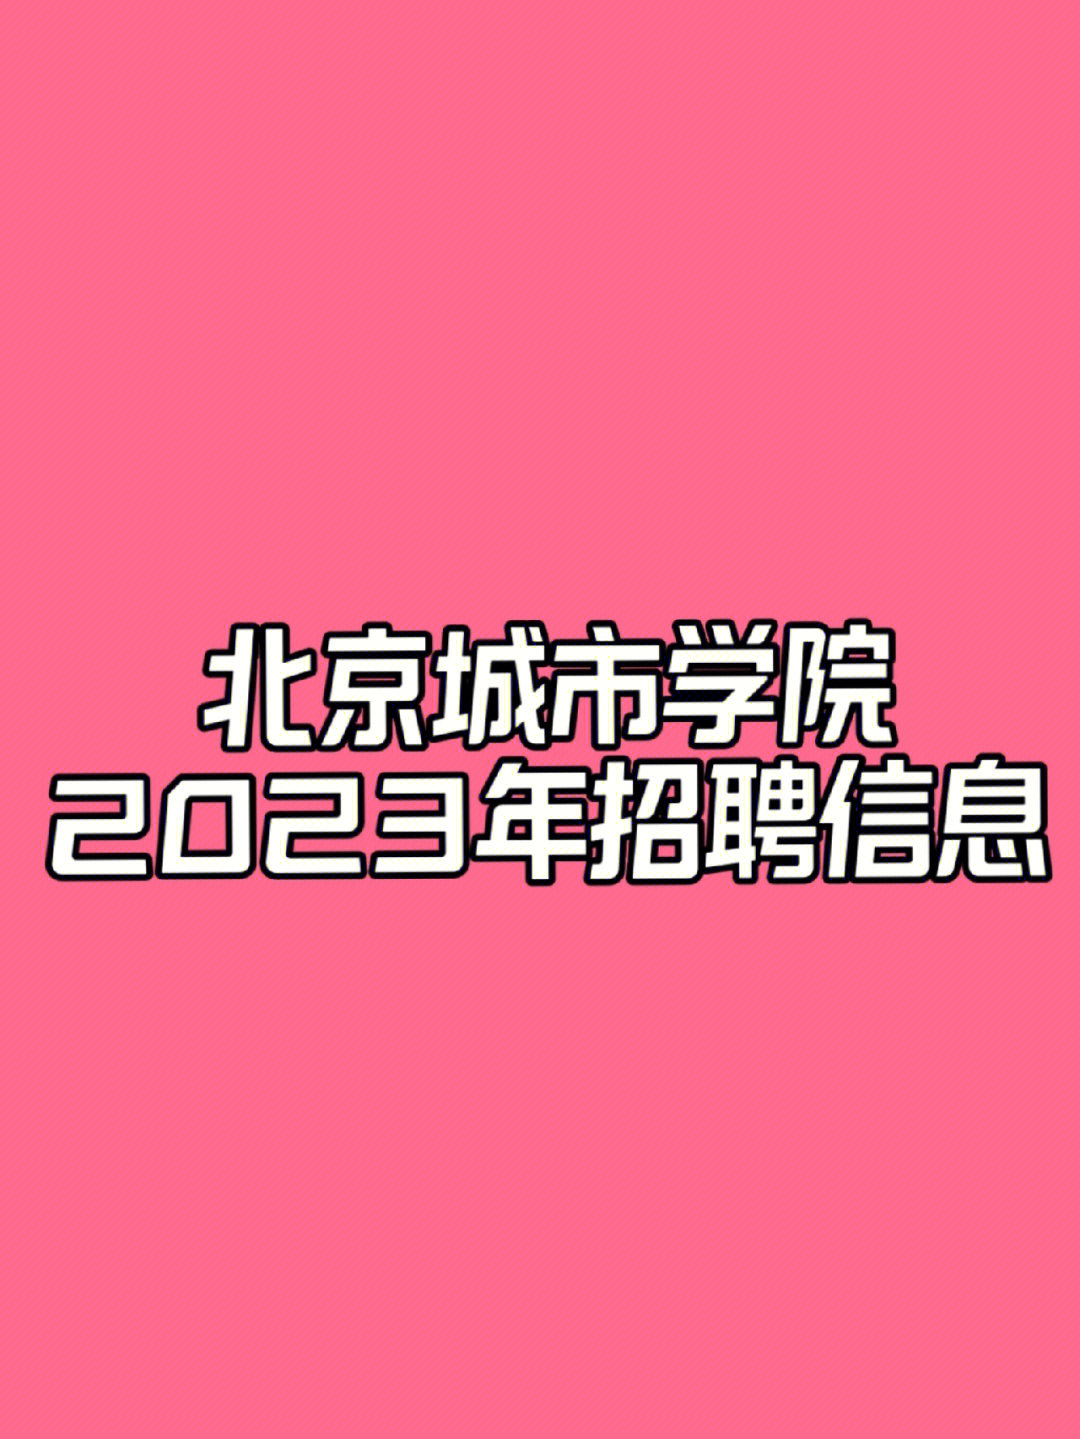 16[向右r]北京城市学院2023年招聘信息已发布[向右r]招聘人数:147